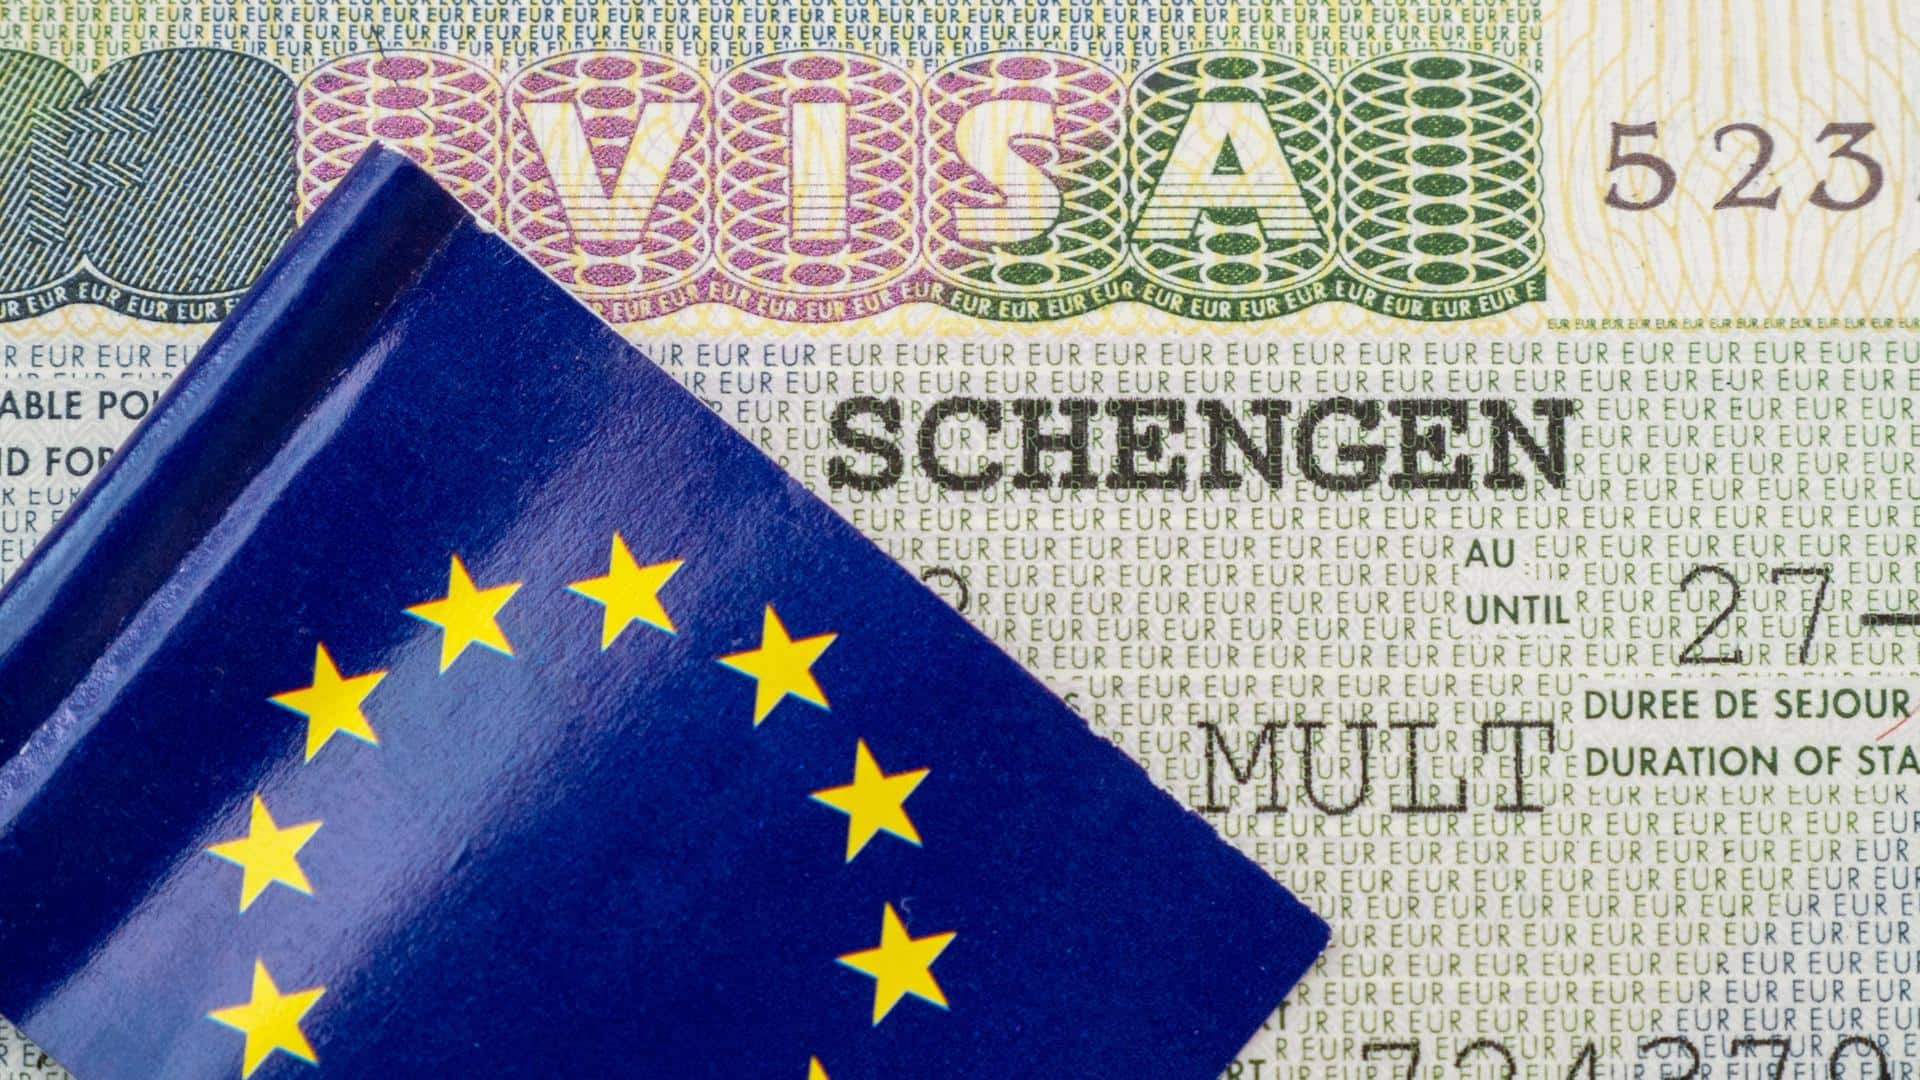 Schengen visa rejections cost Indians Rs. 90 crore loss